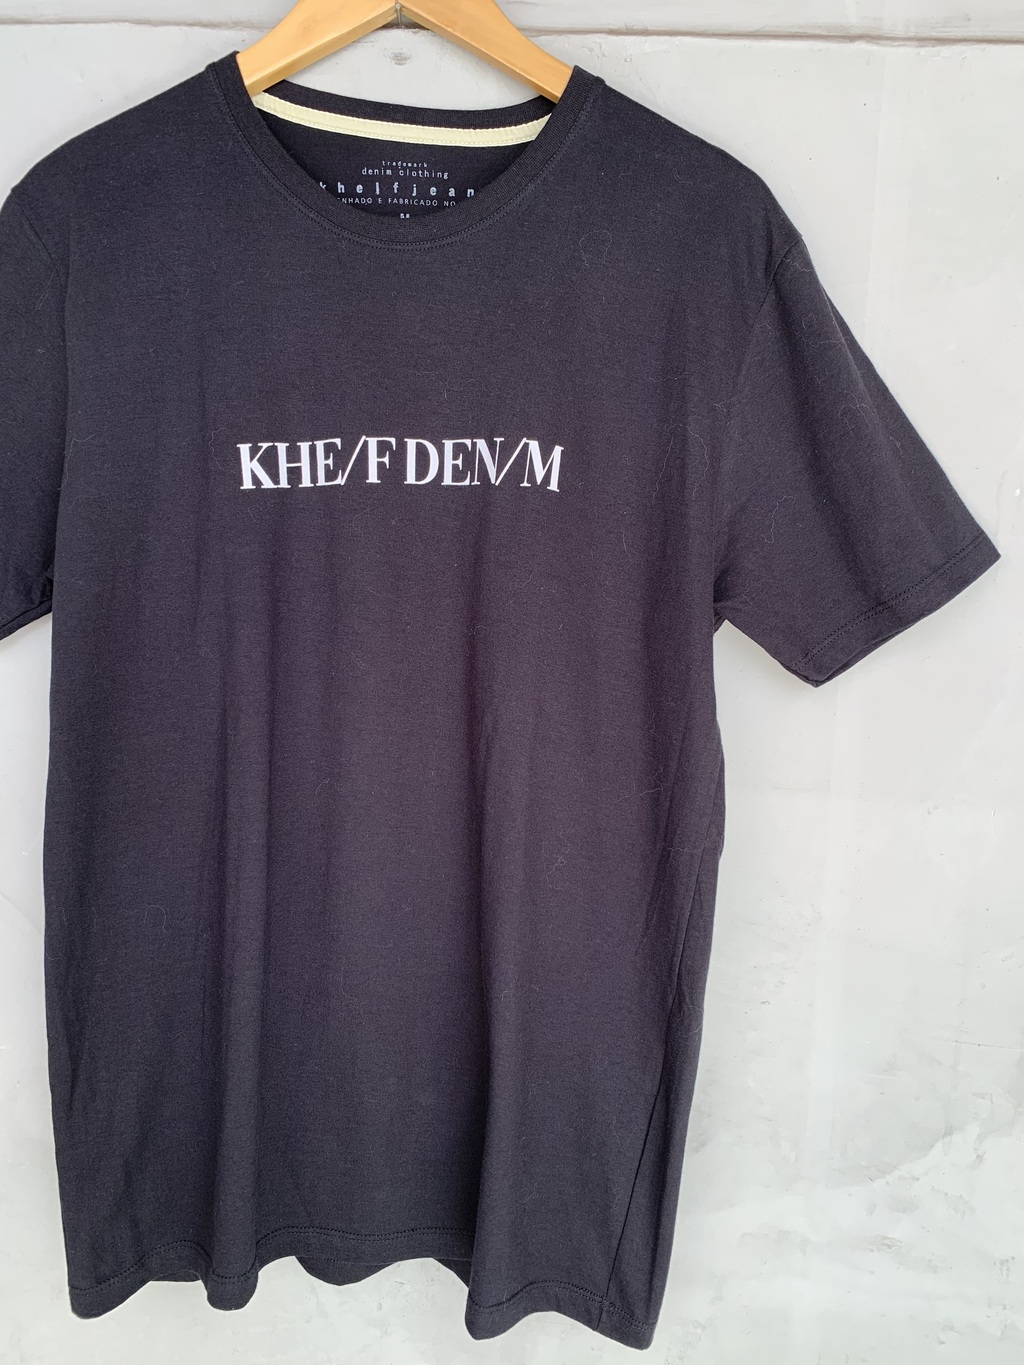 Camiseta Khelf denim - TAM M